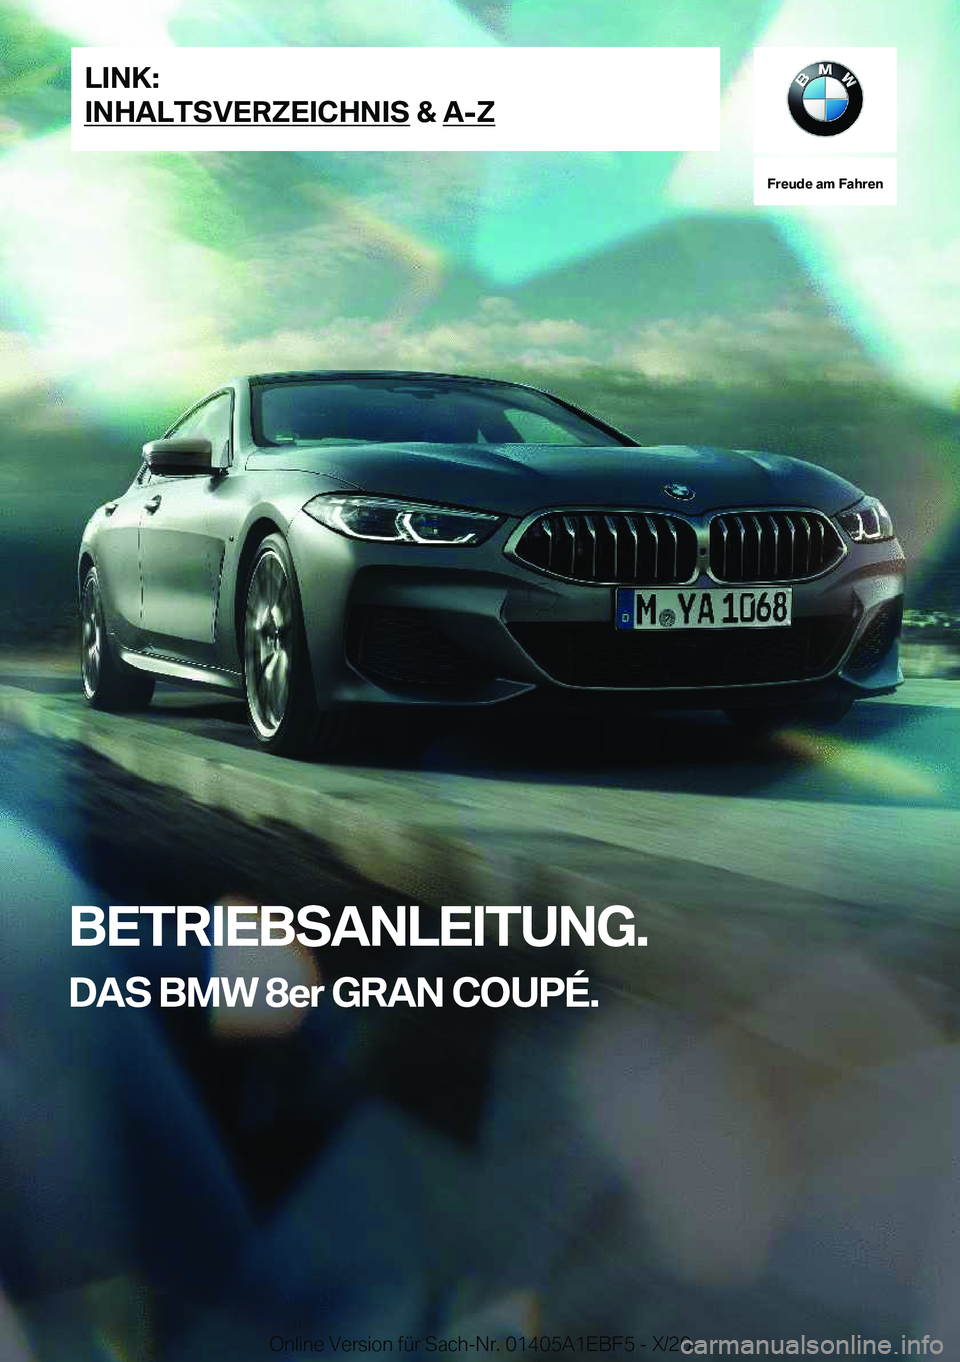 BMW 8 SERIES GRAN COUPE 2021  Betriebsanleitungen (in German) �F�r�e�u�d�e��a�m��F�a�h�r�e�n
�B�E�T�R�I�E�B�S�A�N�L�E�I�T�U�N�G�.�D�A�S��B�M�W��8�e�r��G�R�A�N��C�O�U�P�